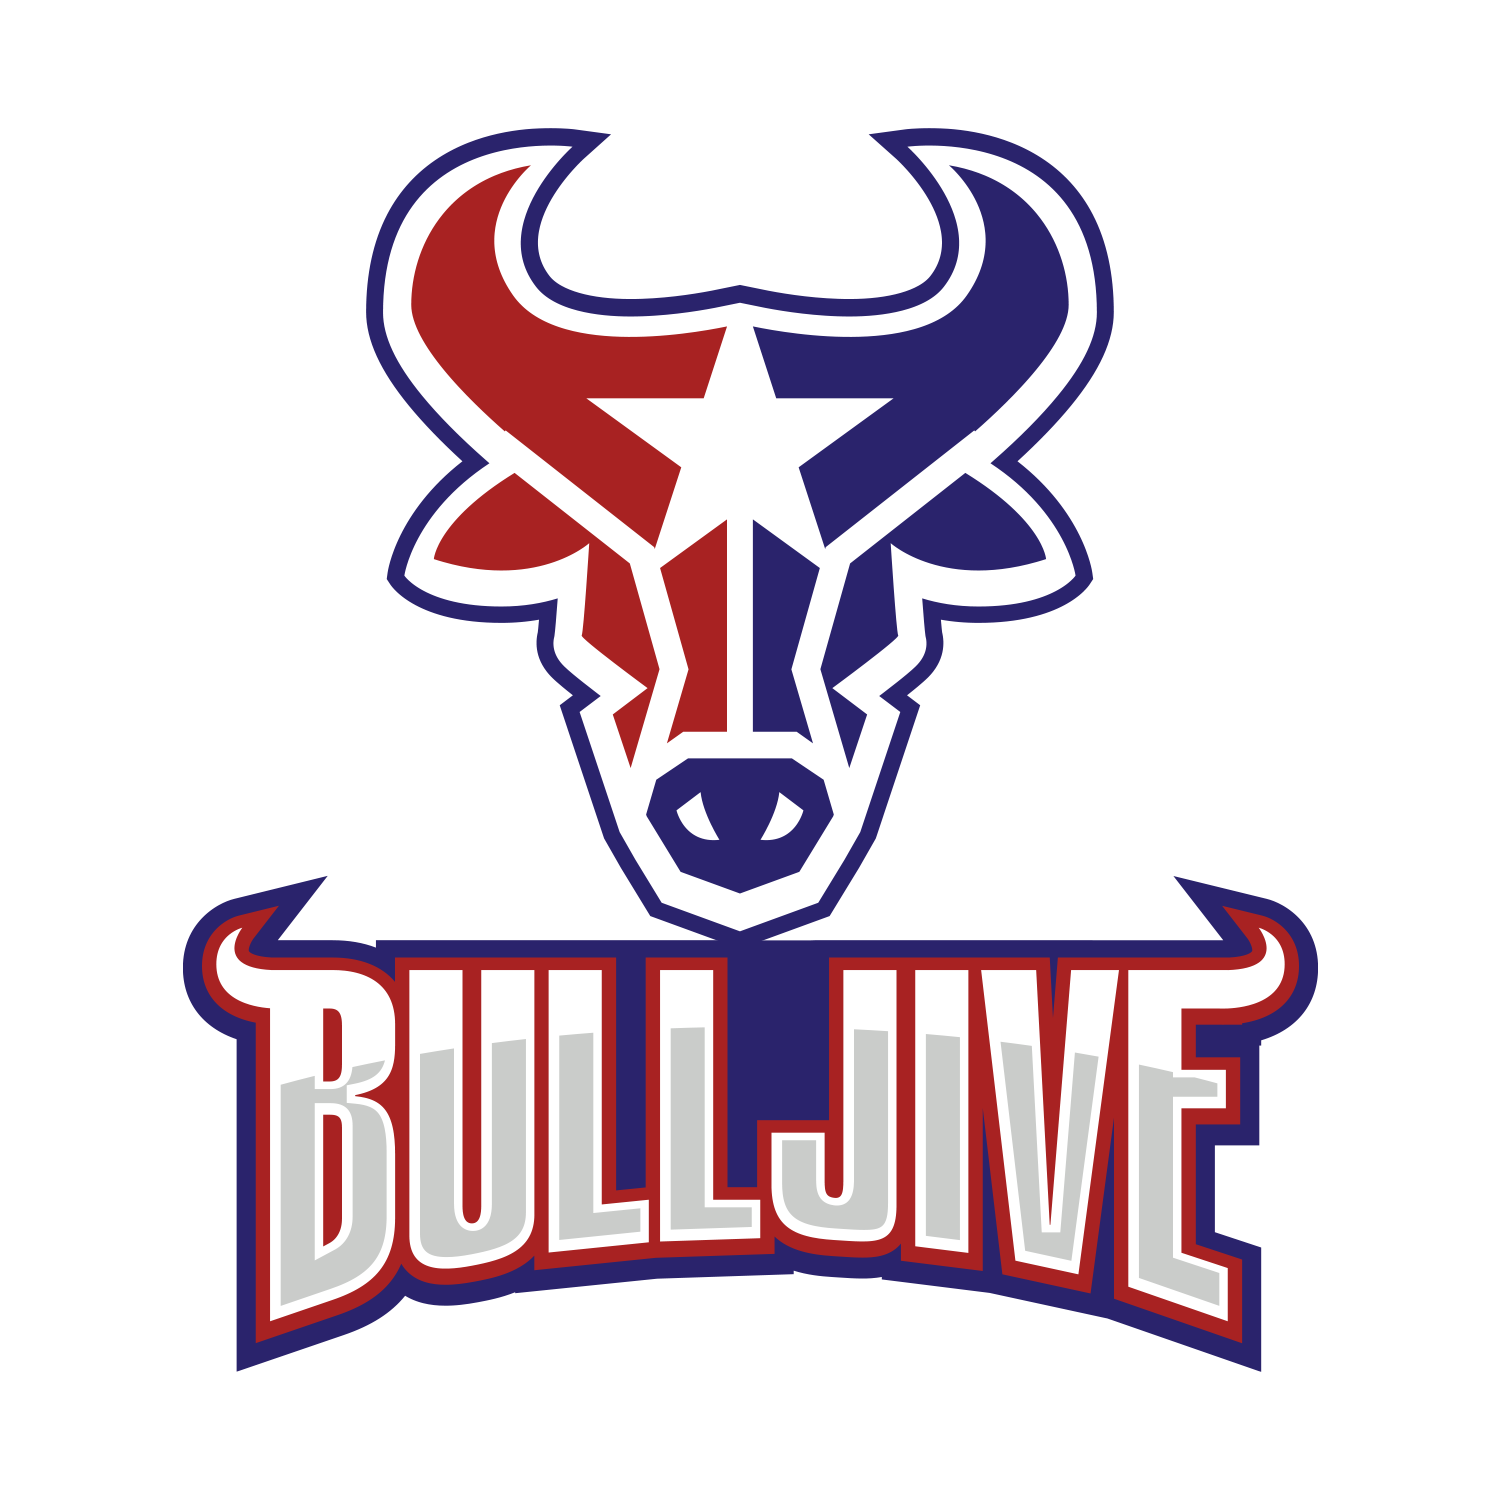 BullJive Brands